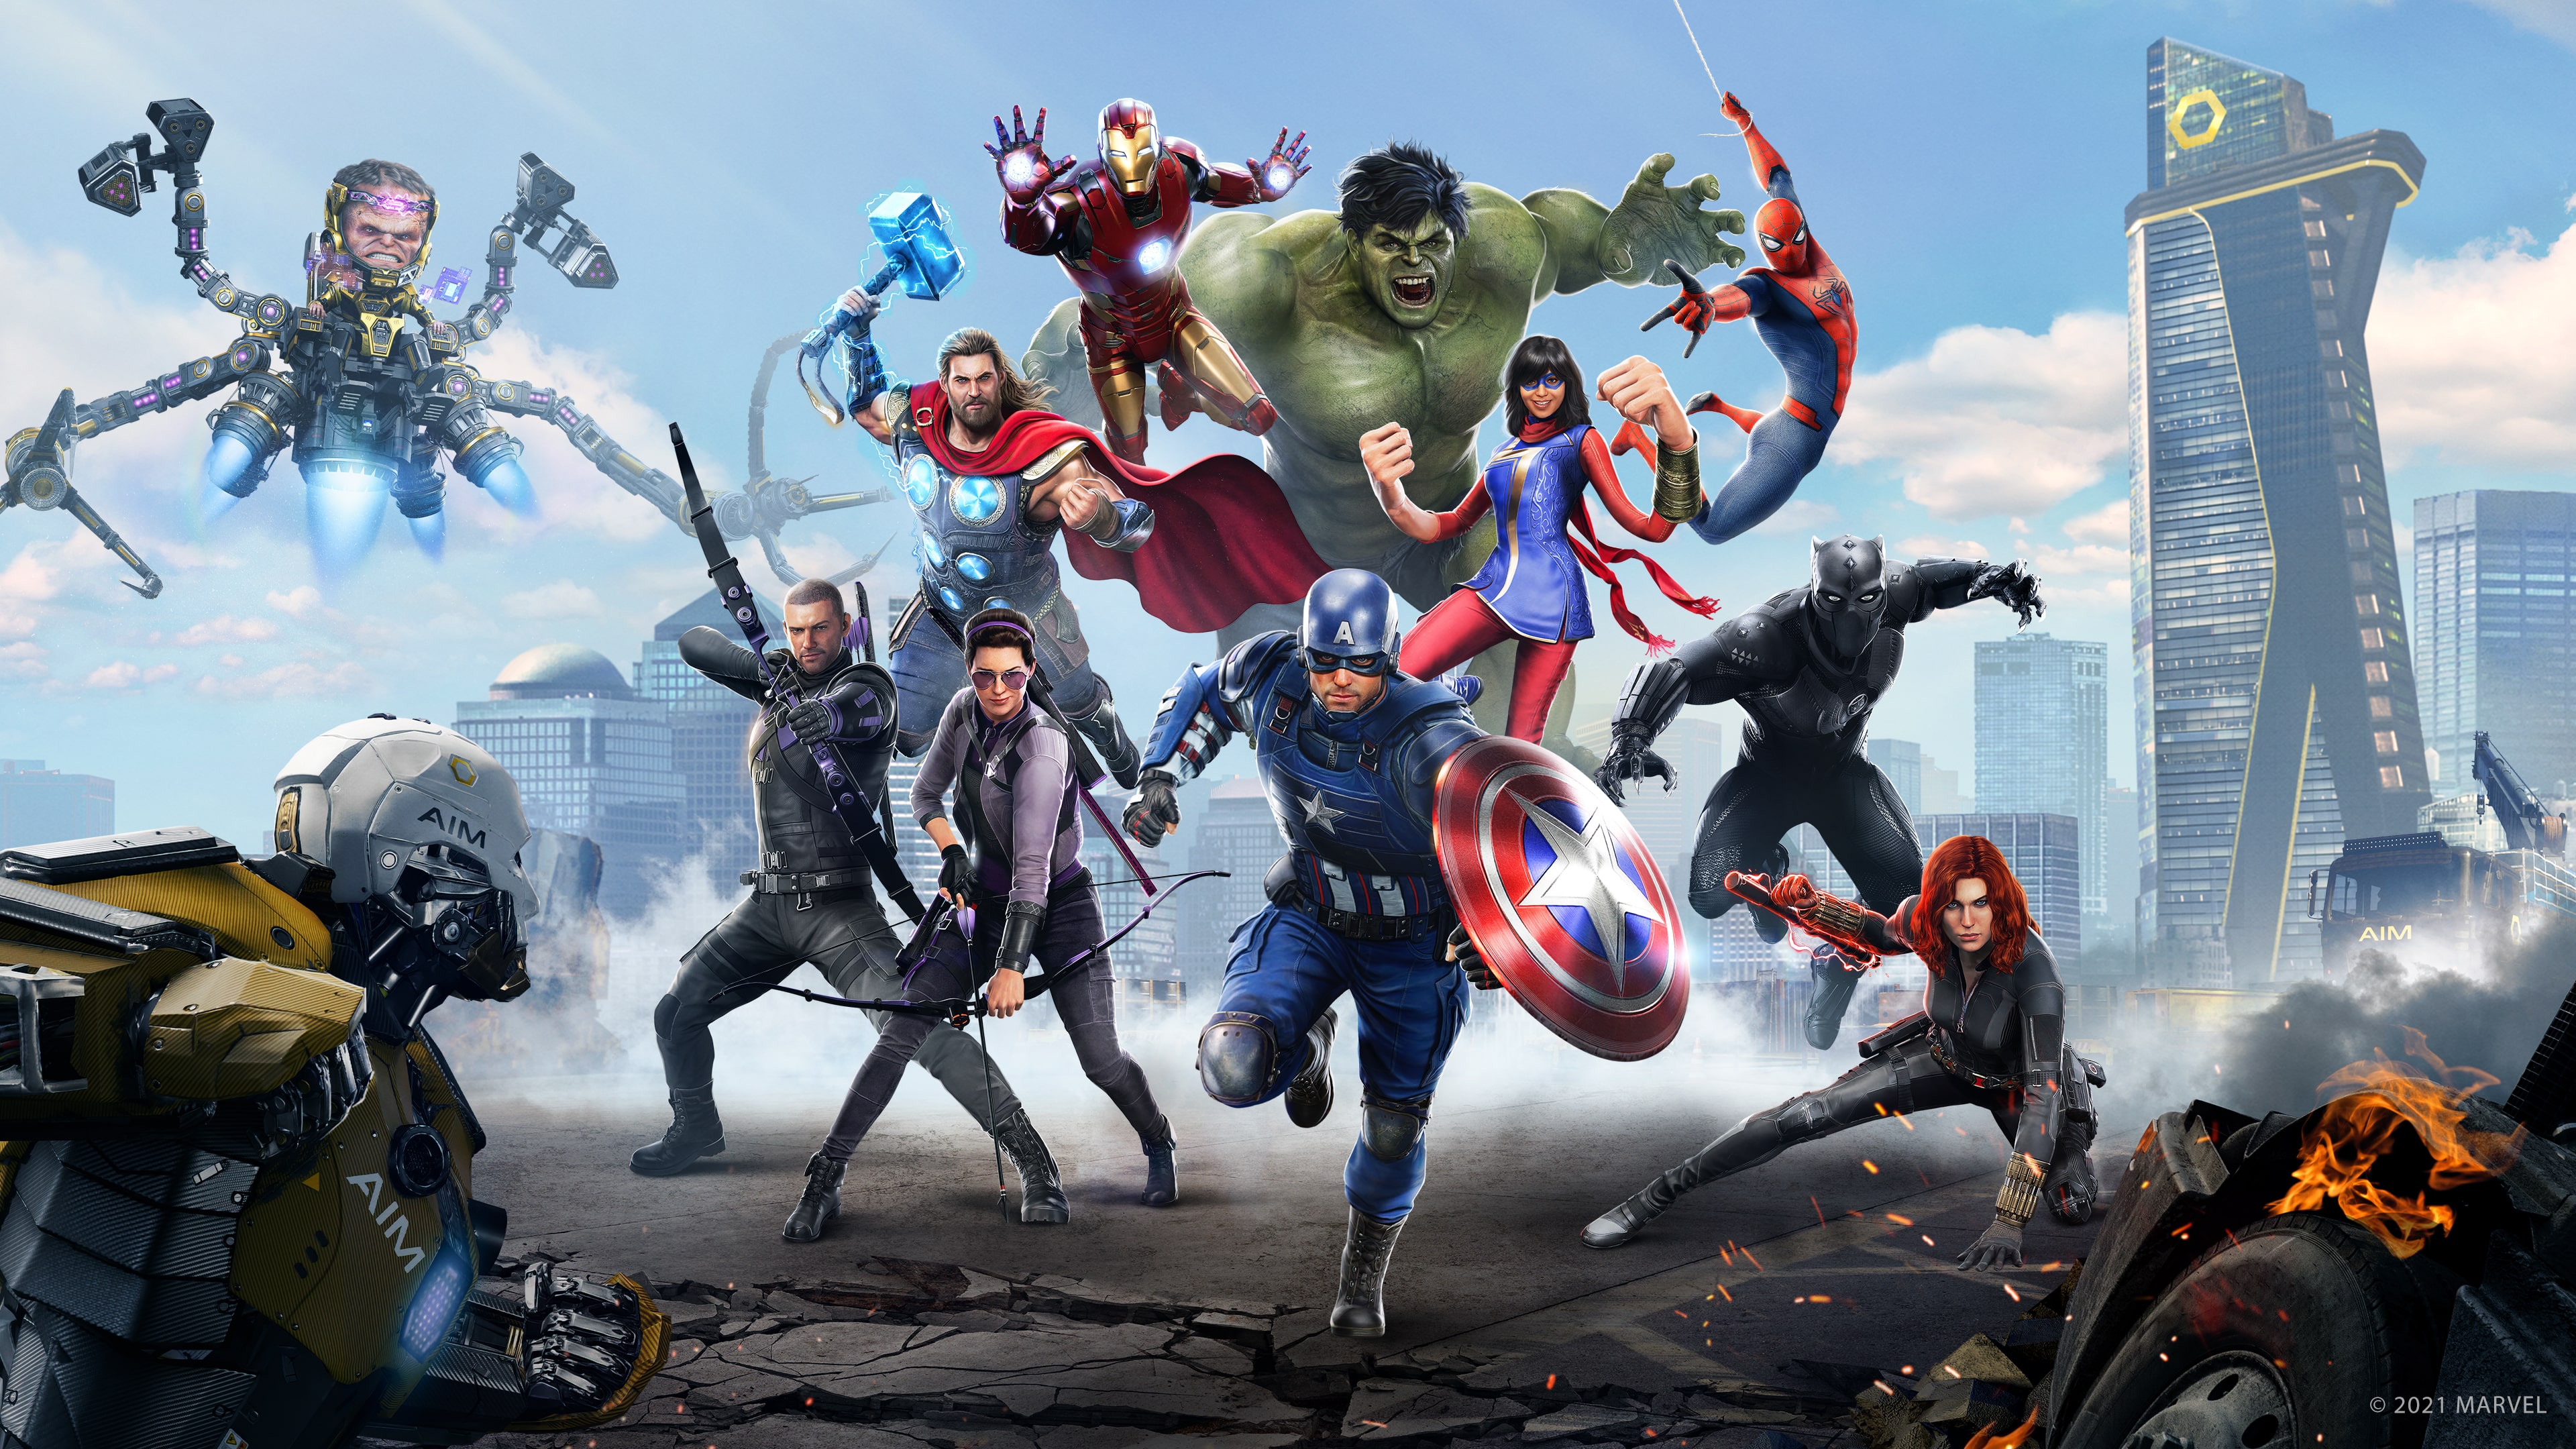 Edición Endgame de Marvel's Avengers